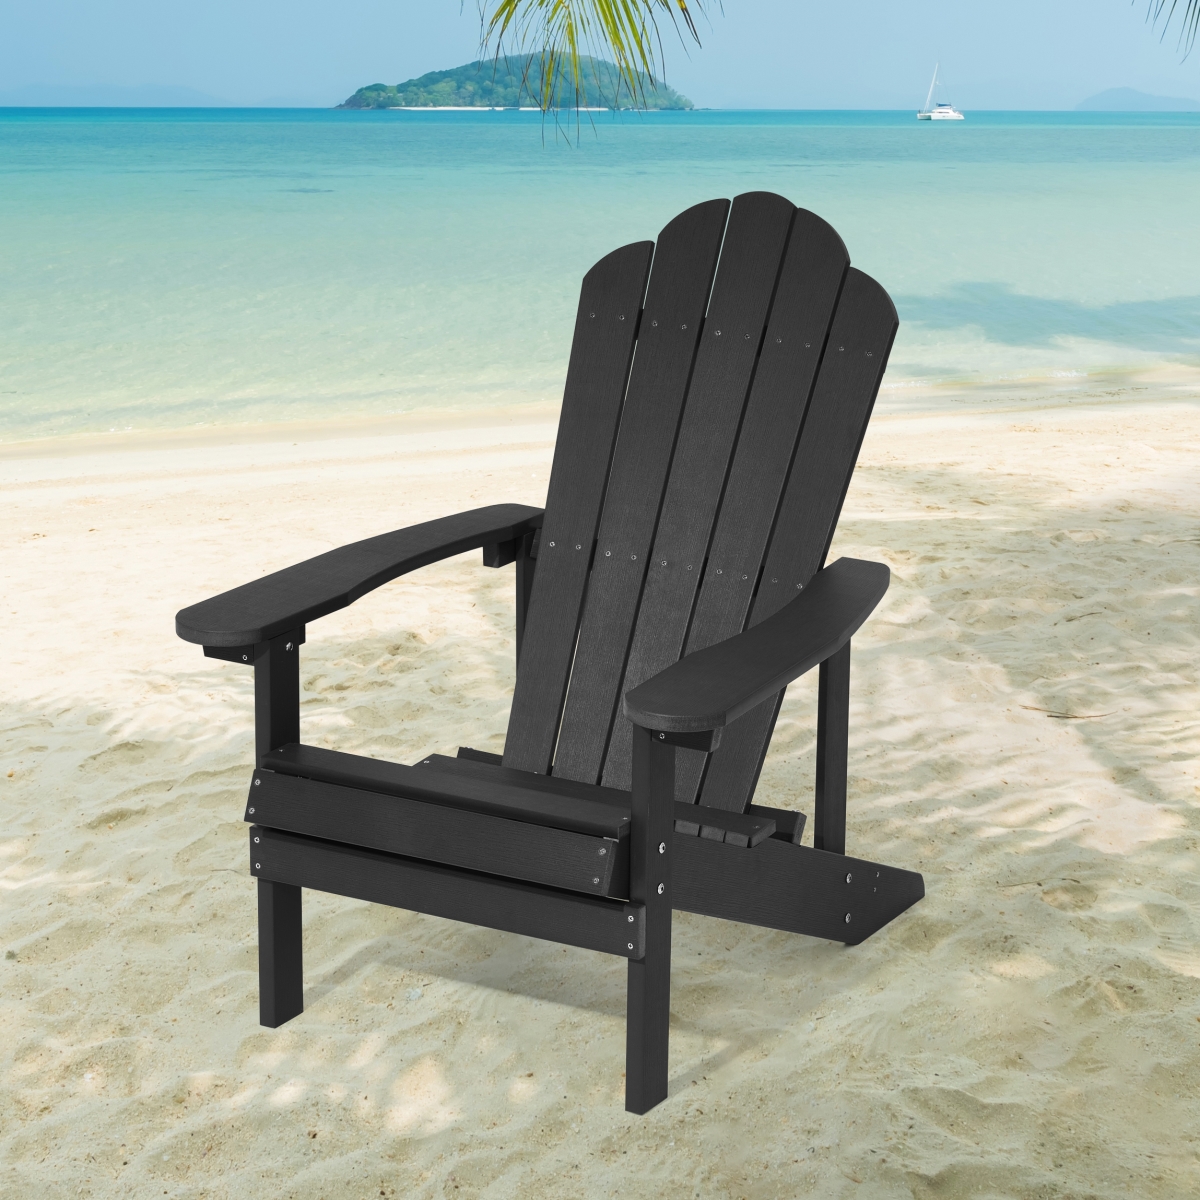 Picture of SANLUCE UN-SM-32-BK Black Weather Resistant Plastic Adirondack Chair